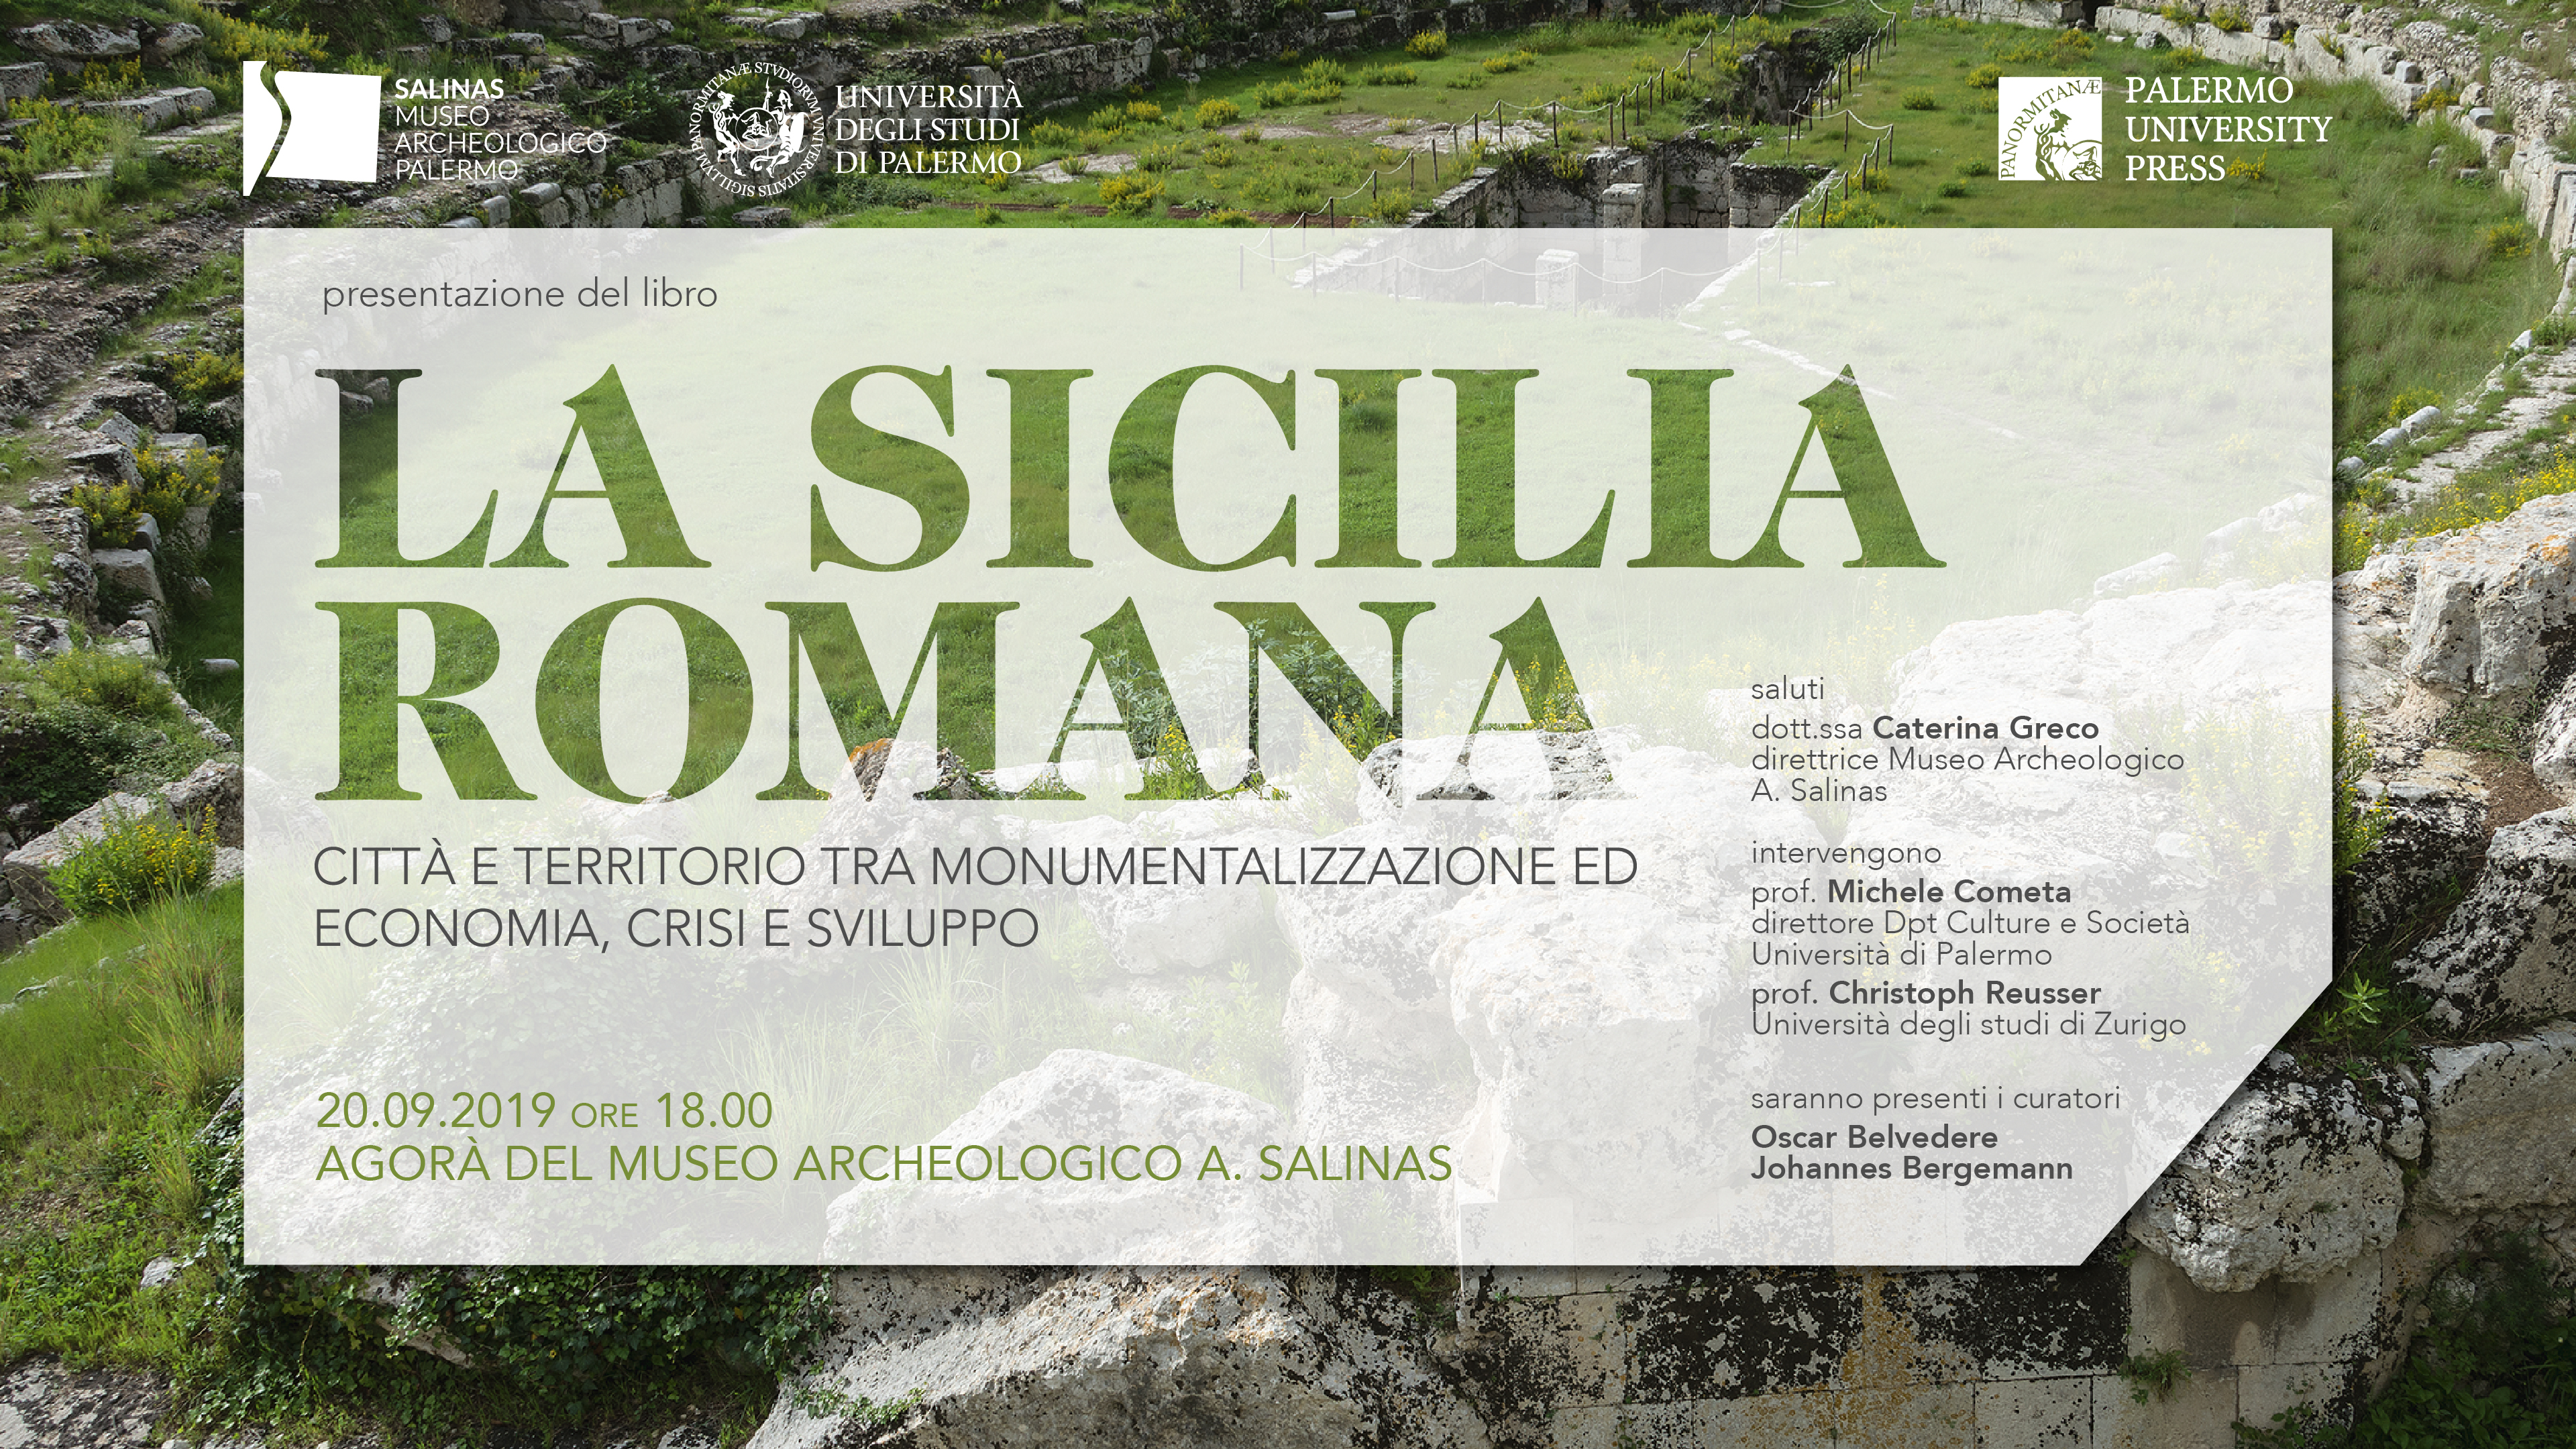 La Sicilia Romana: la presentazione del volume di Palermo University Press all'Agorà del Museo Archeologico A. Salinas